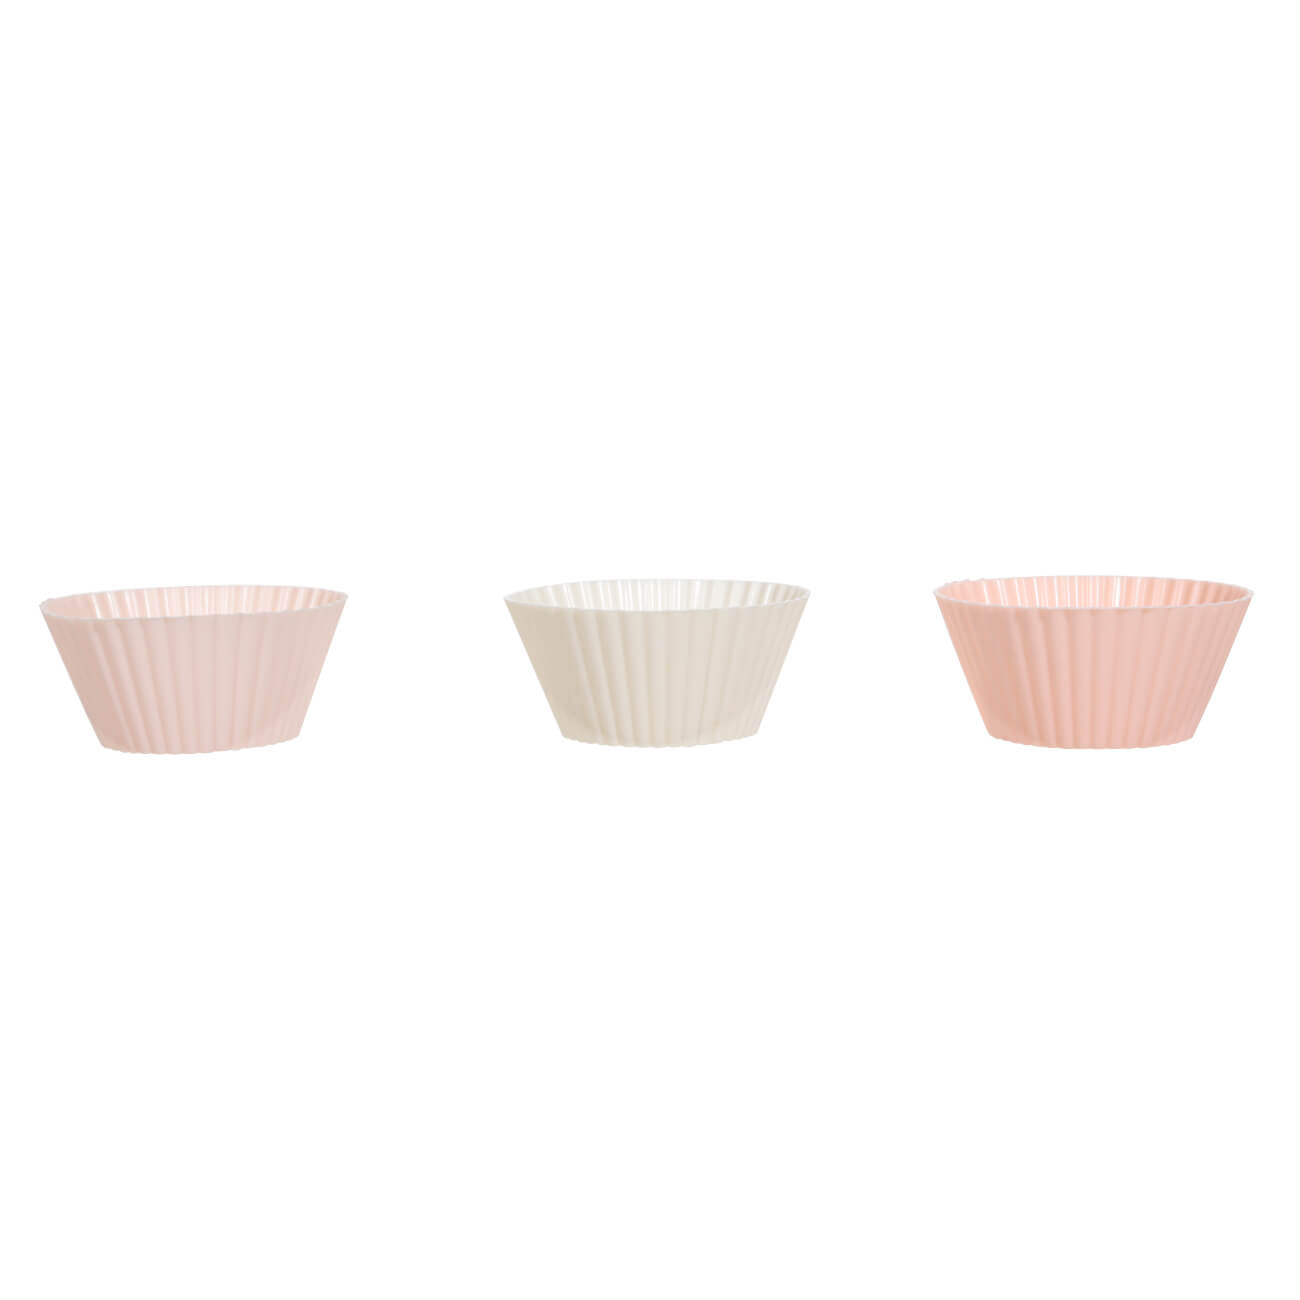 Форма для выпечки кексов, 7х3 см, 6 шт, силикон, бежевая/розовая/белая, Bakery форма для выпечки кексов tavolone